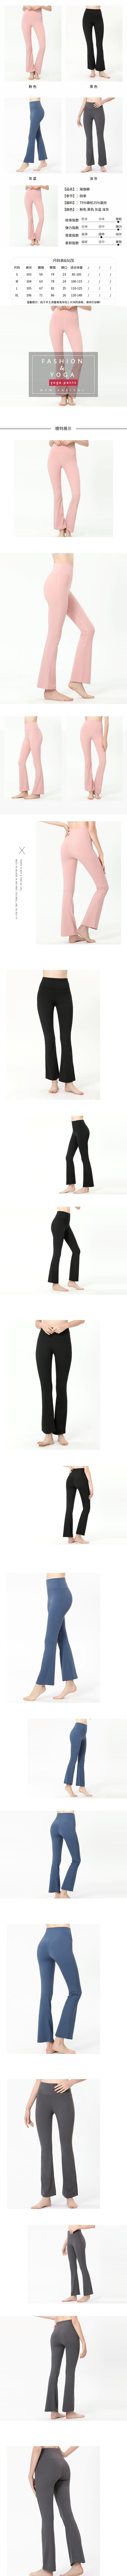 玩美衣櫃高腰提臀微喇叭舞蹈瑜珈裸感長褲S-XL(共4色)